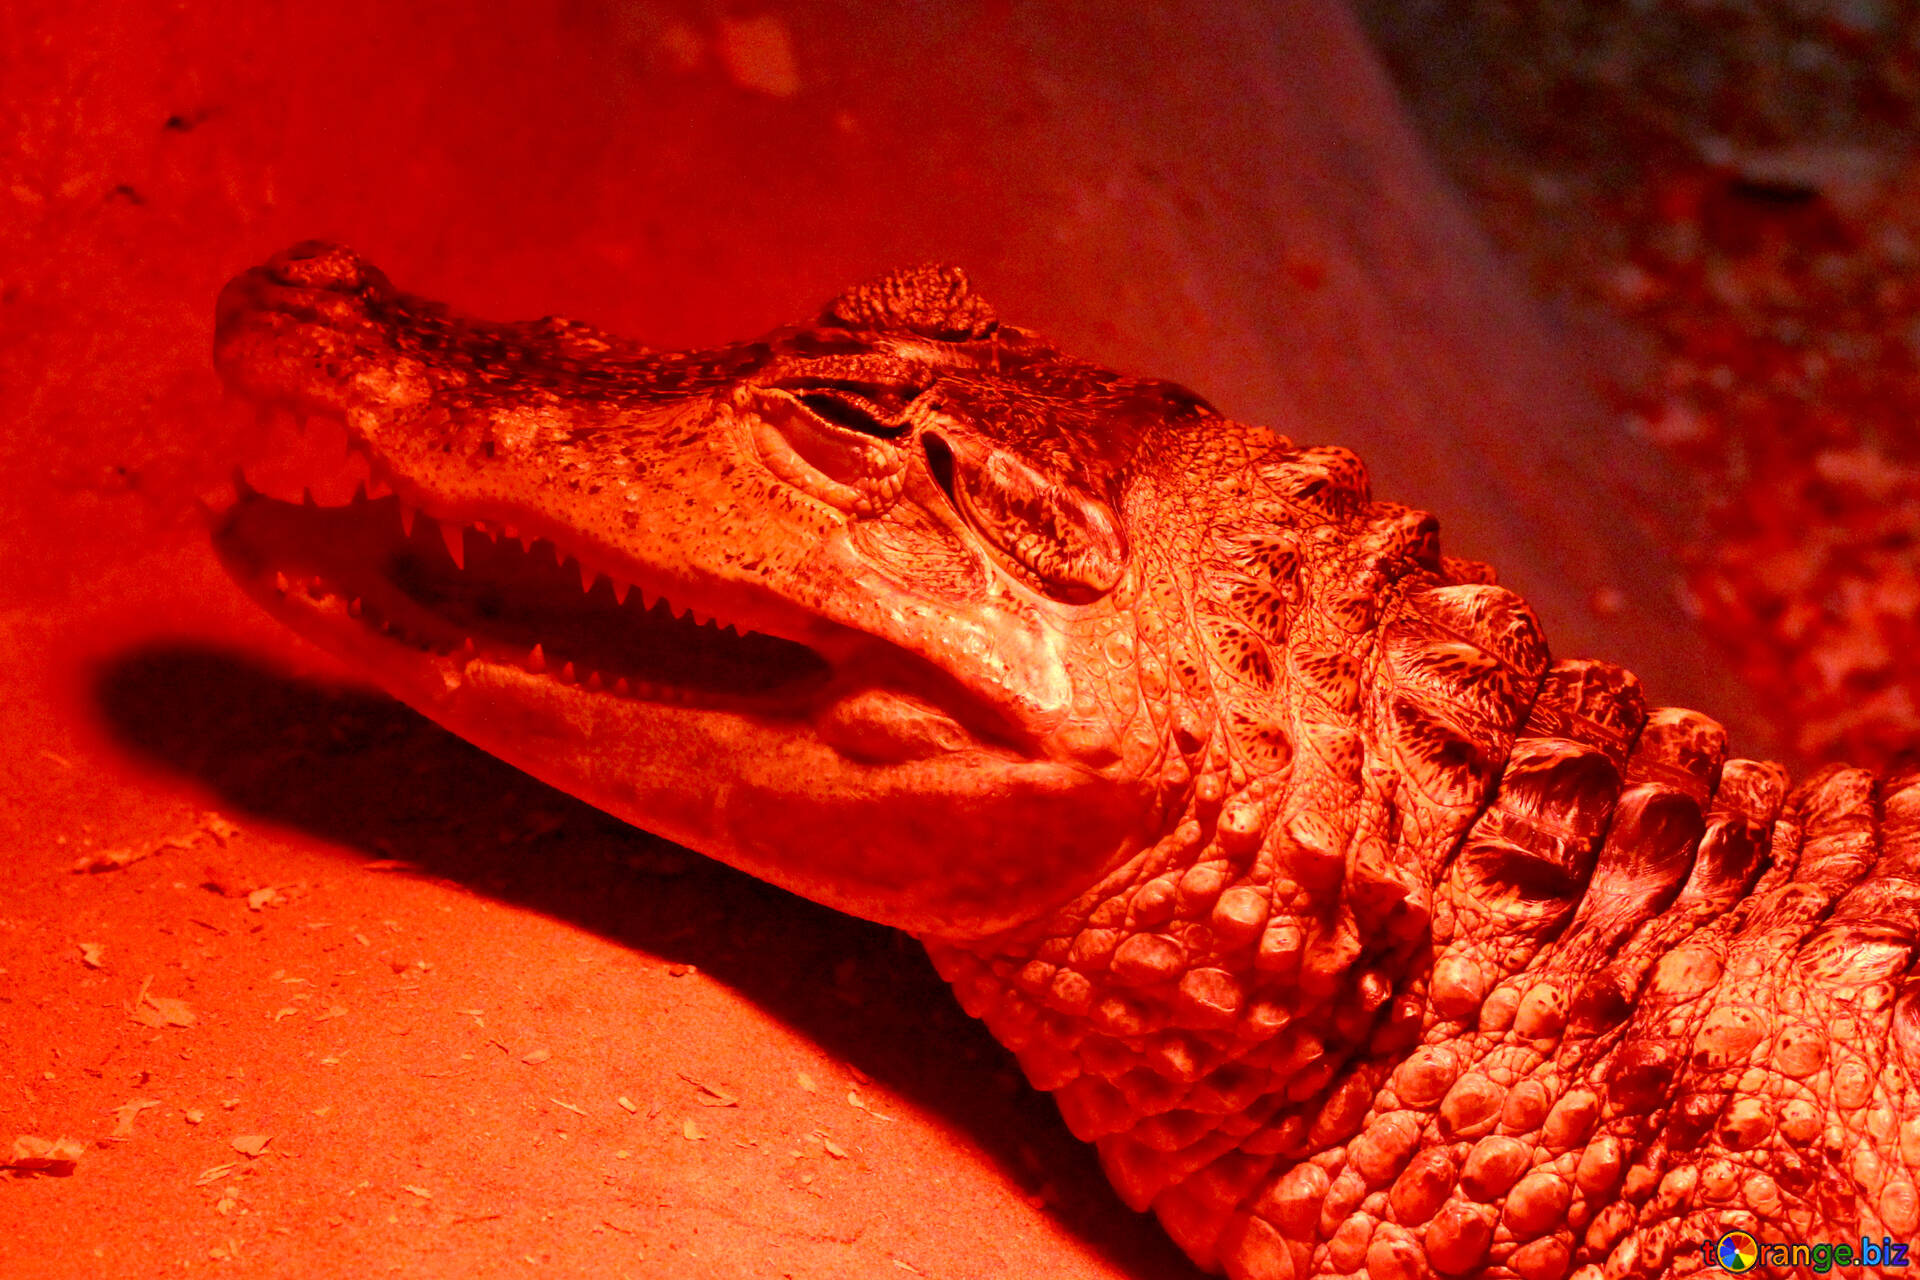 gasformig Fjerde maske Red crocodile free image - № 45792